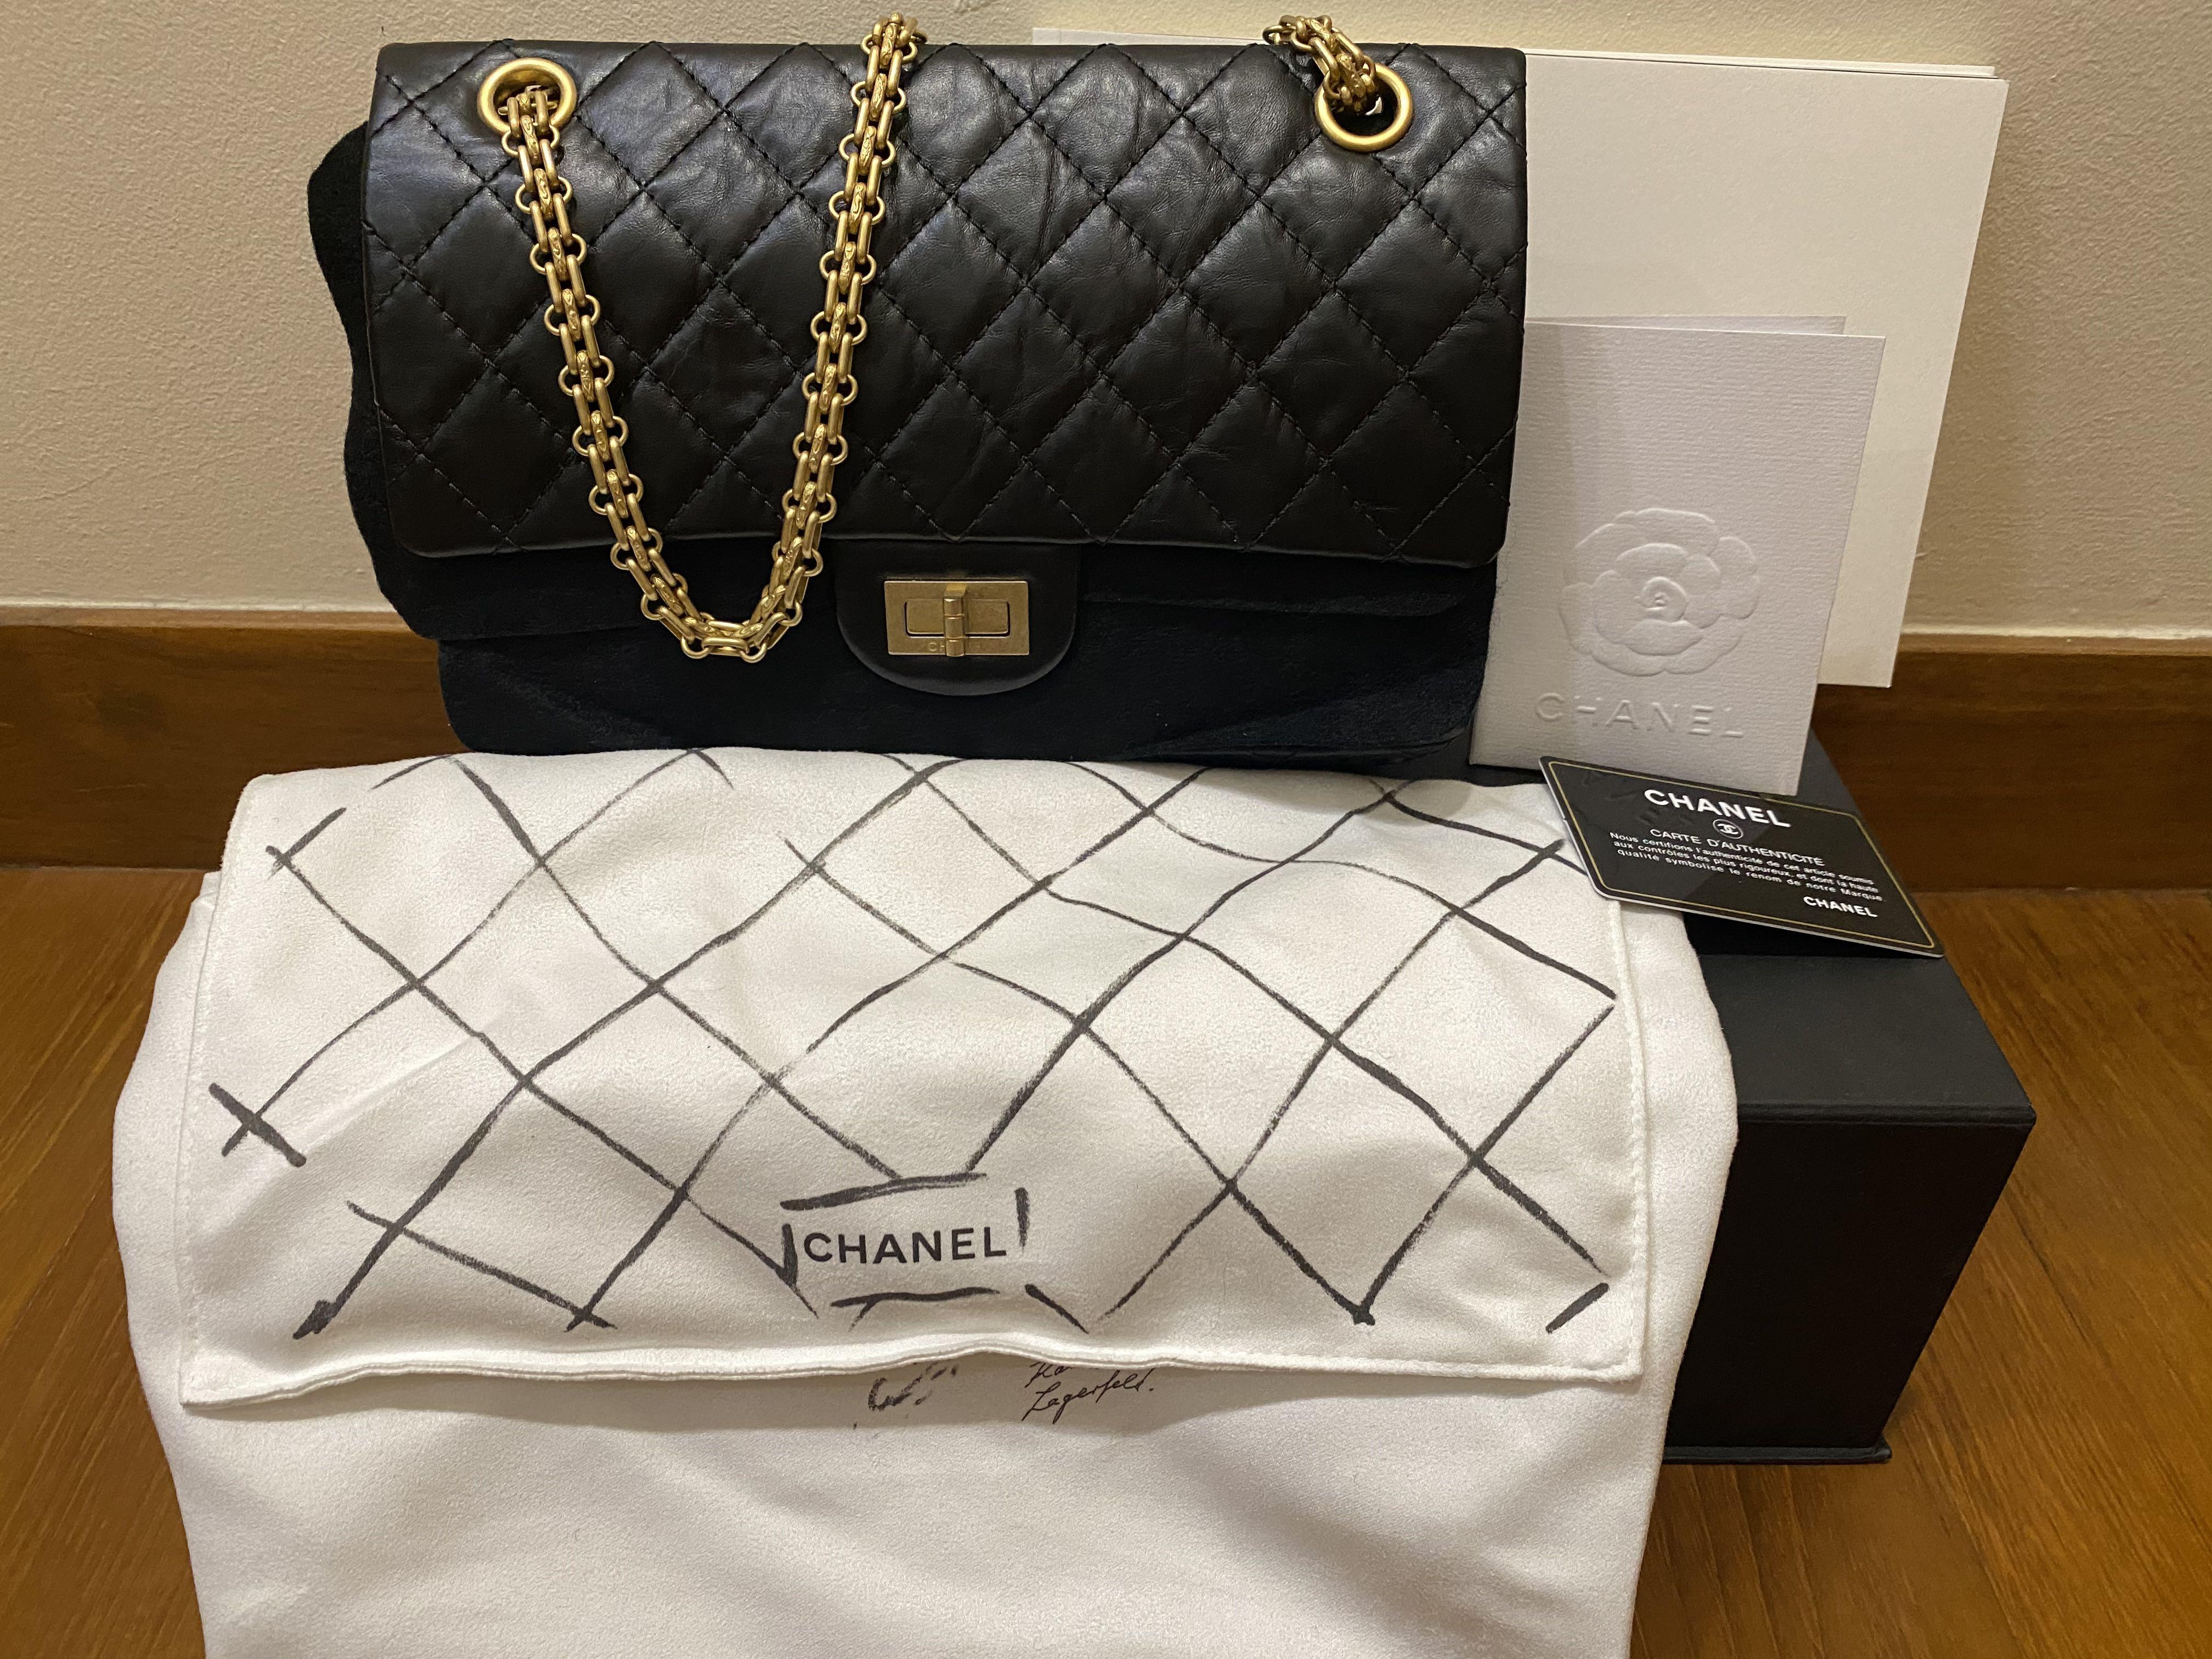 Chanel Bag Size Comparison: Classic Flap vs Reissue [Pictures